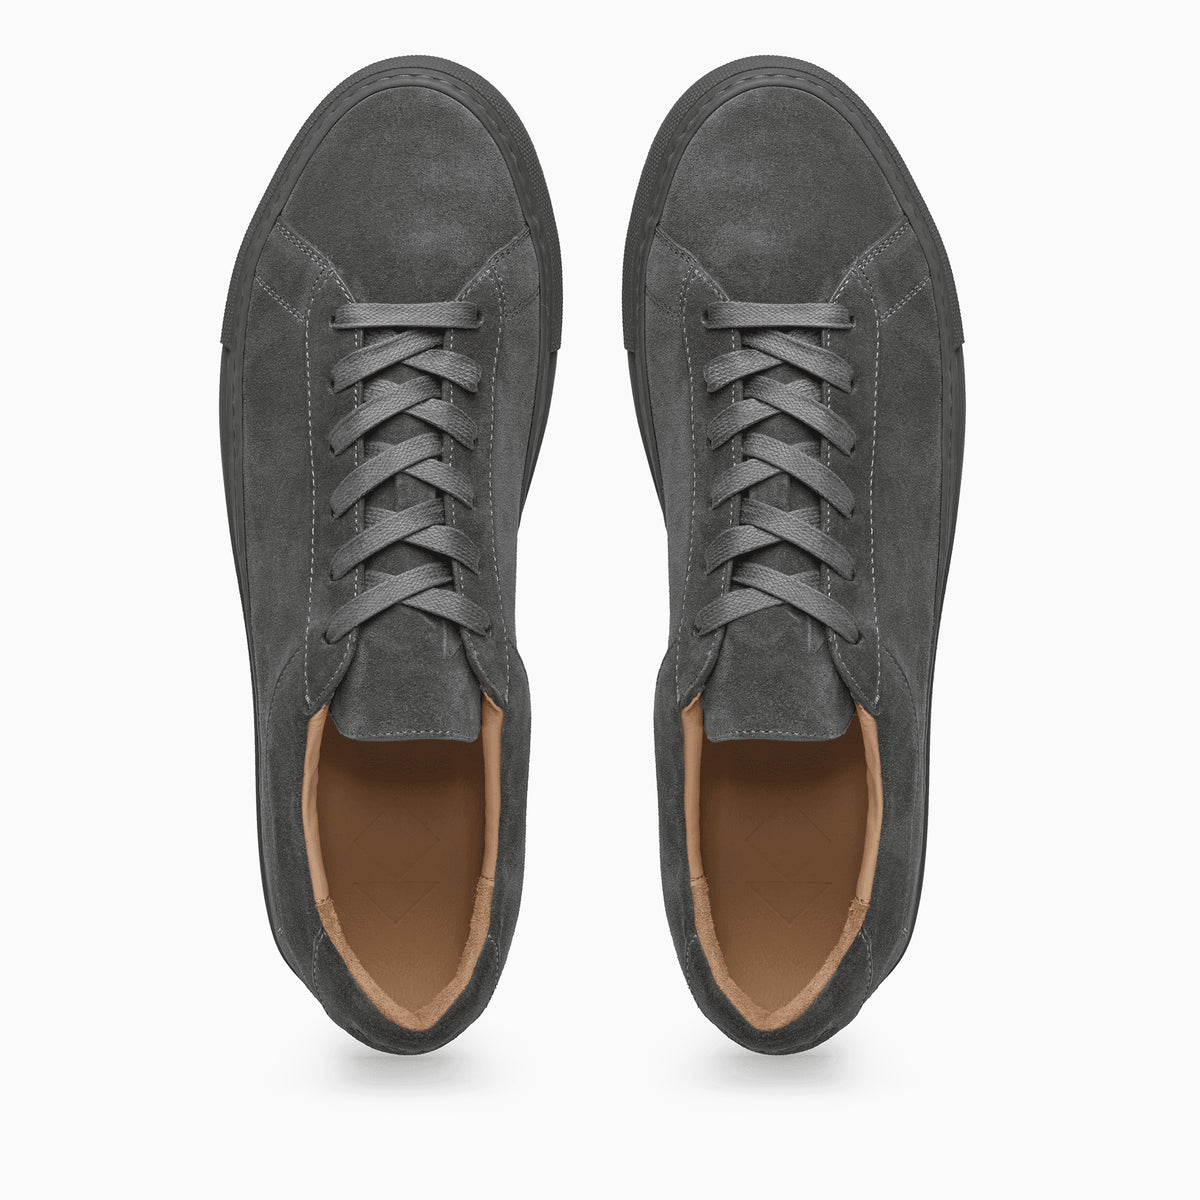 suede shoes grey